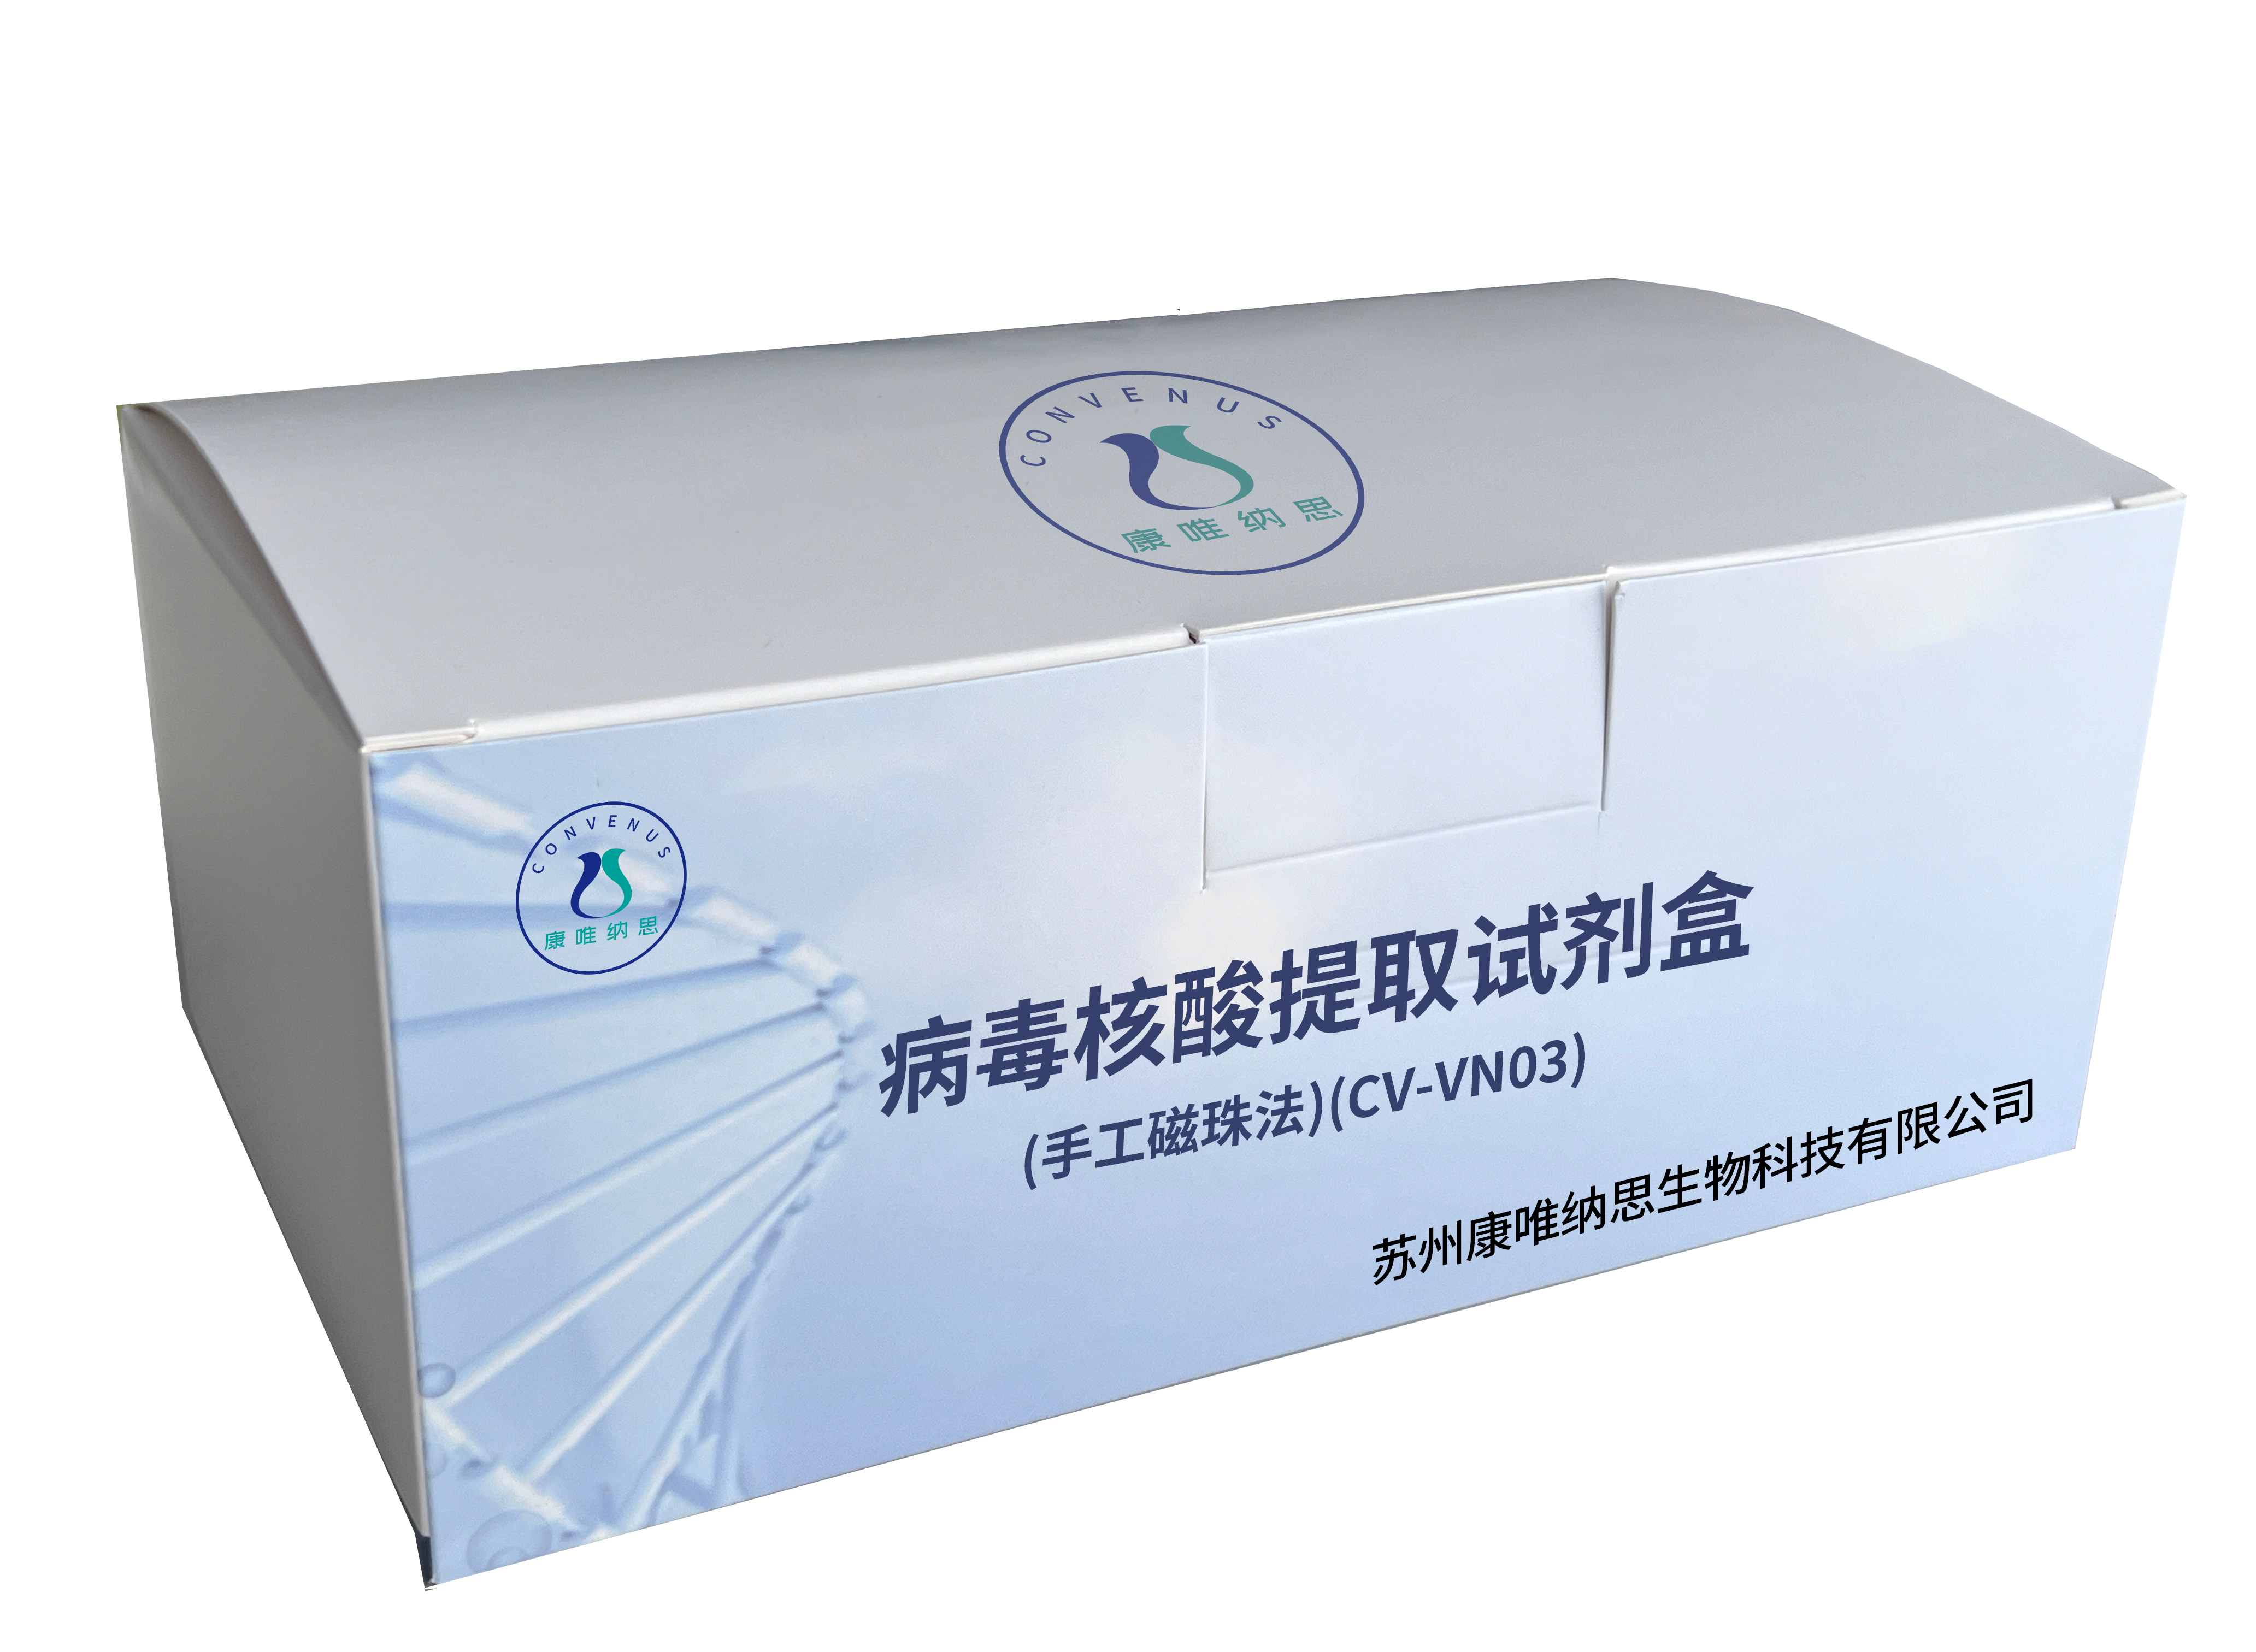 病毒核酸提取试剂盒(手工磁珠法)(CV-VN03)